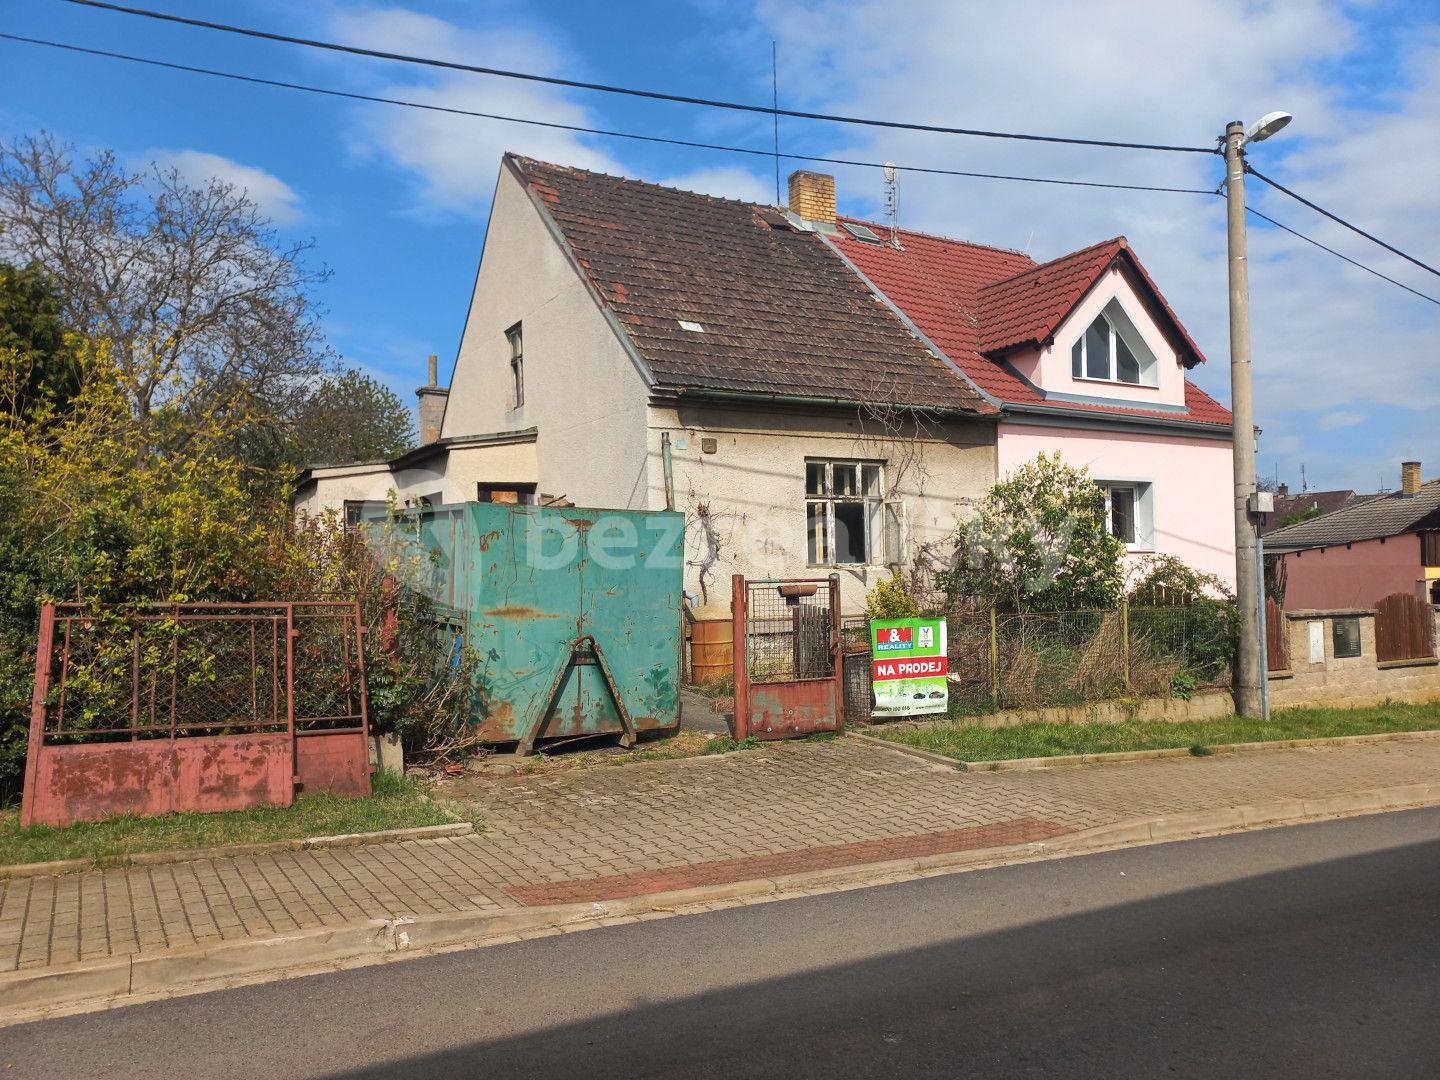 Prodej domu 105 m², pozemek 1.047 m², Tovární, Dýšina, Plzeňský kraj